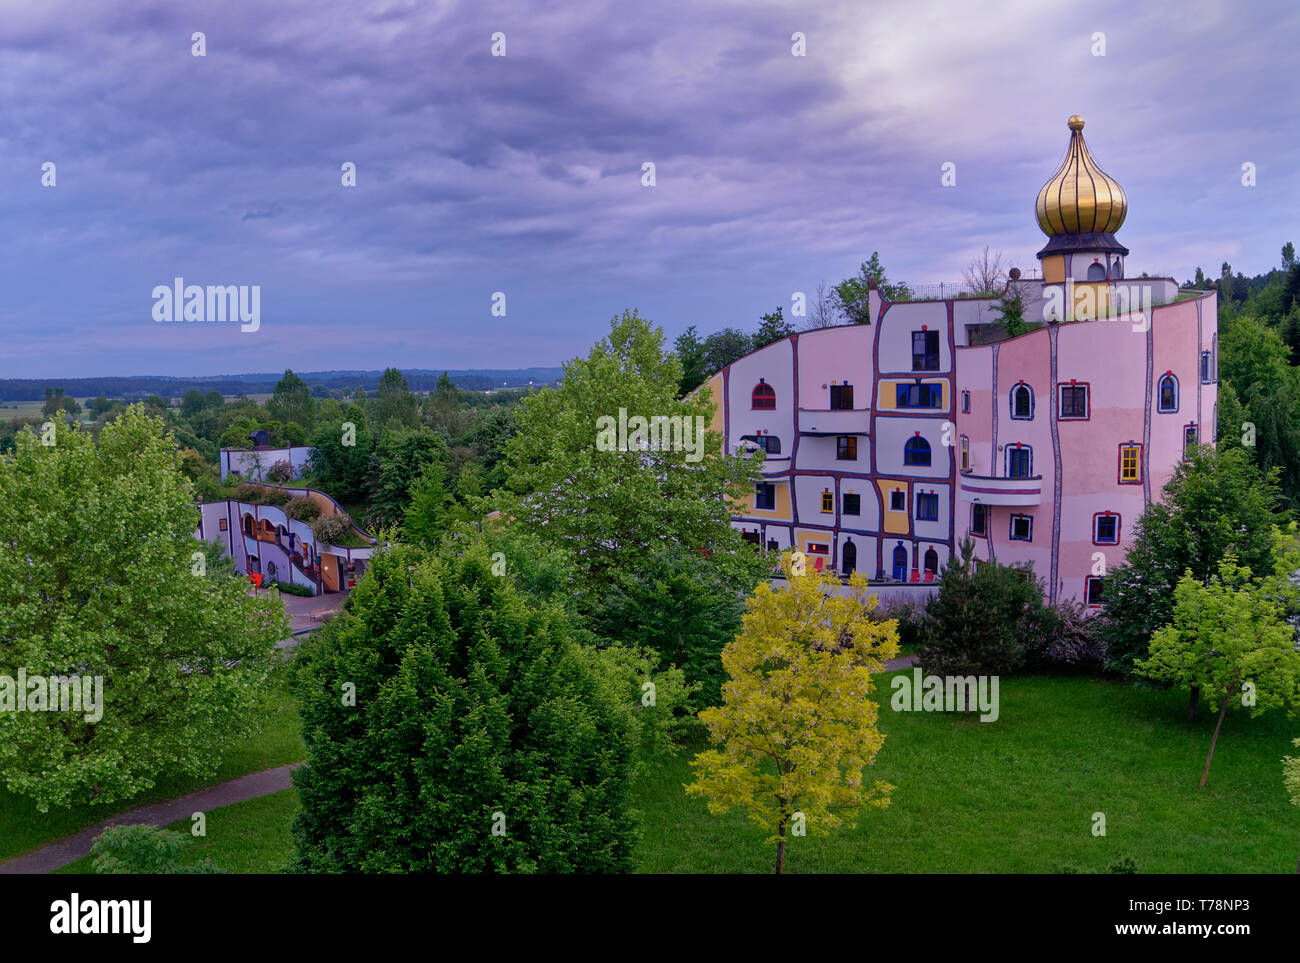 Regarder sur le Stammhaus et son dôme doré à rogner Bad Blumau, Autriche, un resort ou hôtel spa conçu par Friedensreich Hundertwasser Banque D'Images